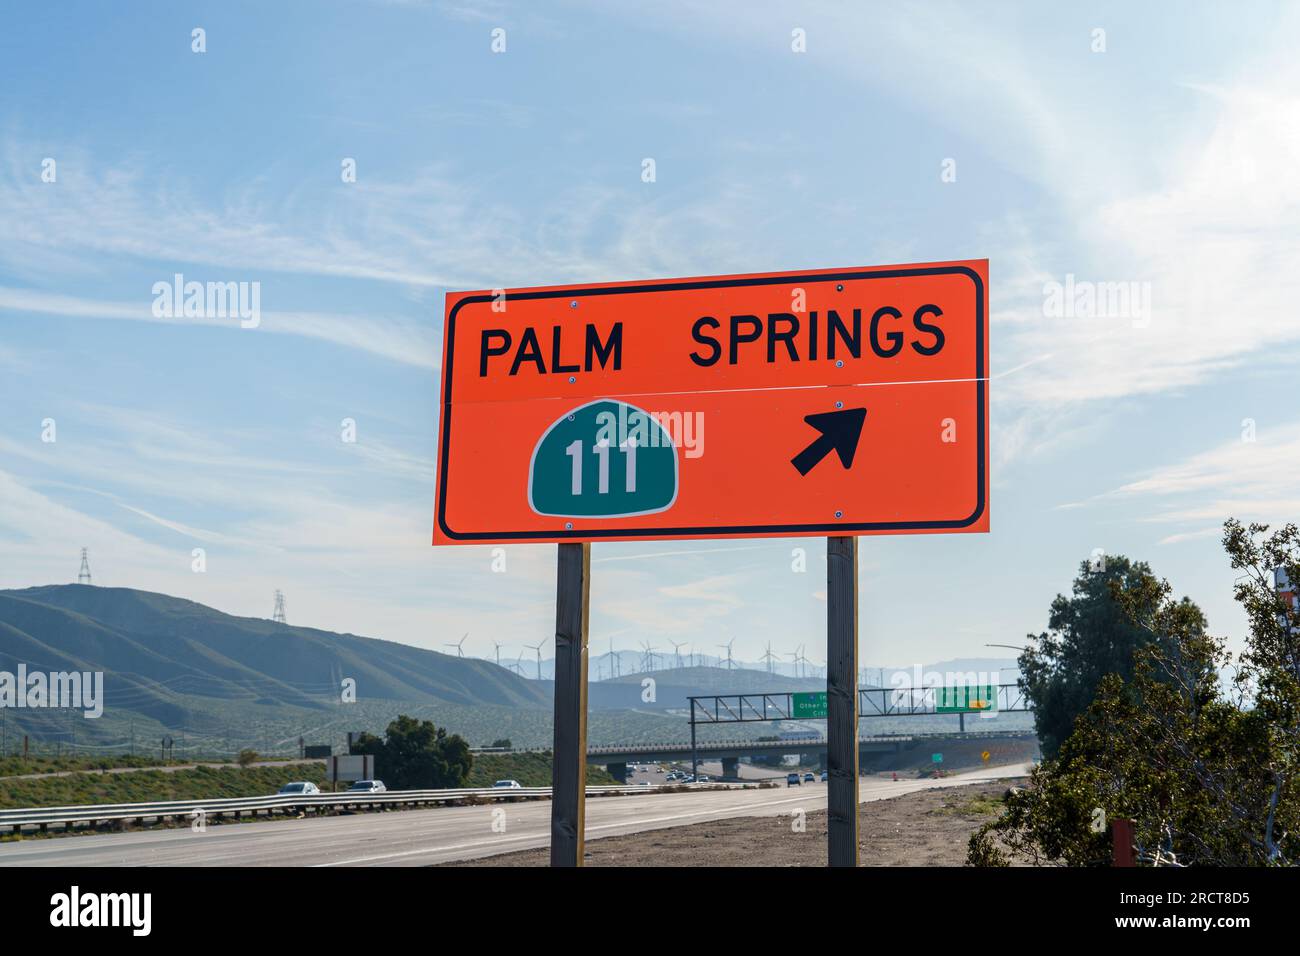 Panneau orange indiquant la Highway 111 menant à Palm Springs, Californie. Situé sur l'autoroute 1-10 Interstate 10. Banque D'Images